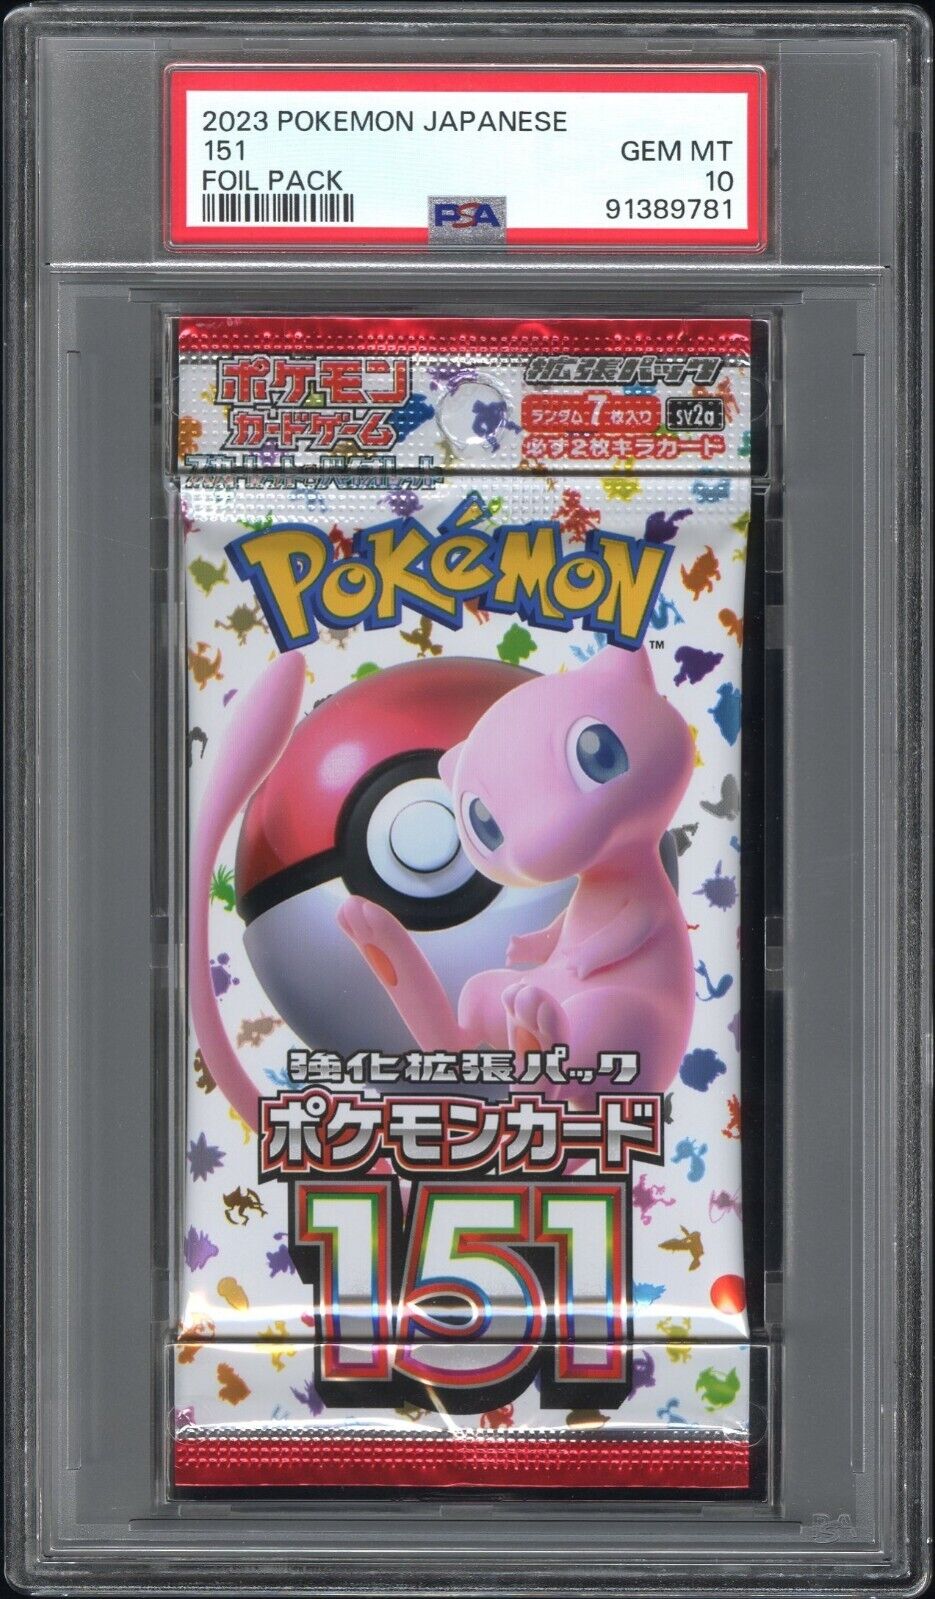 2023 Pokemon Japanese Scarlet & Violet 151 Foil / Booster Pack GEM MINT PSA 10